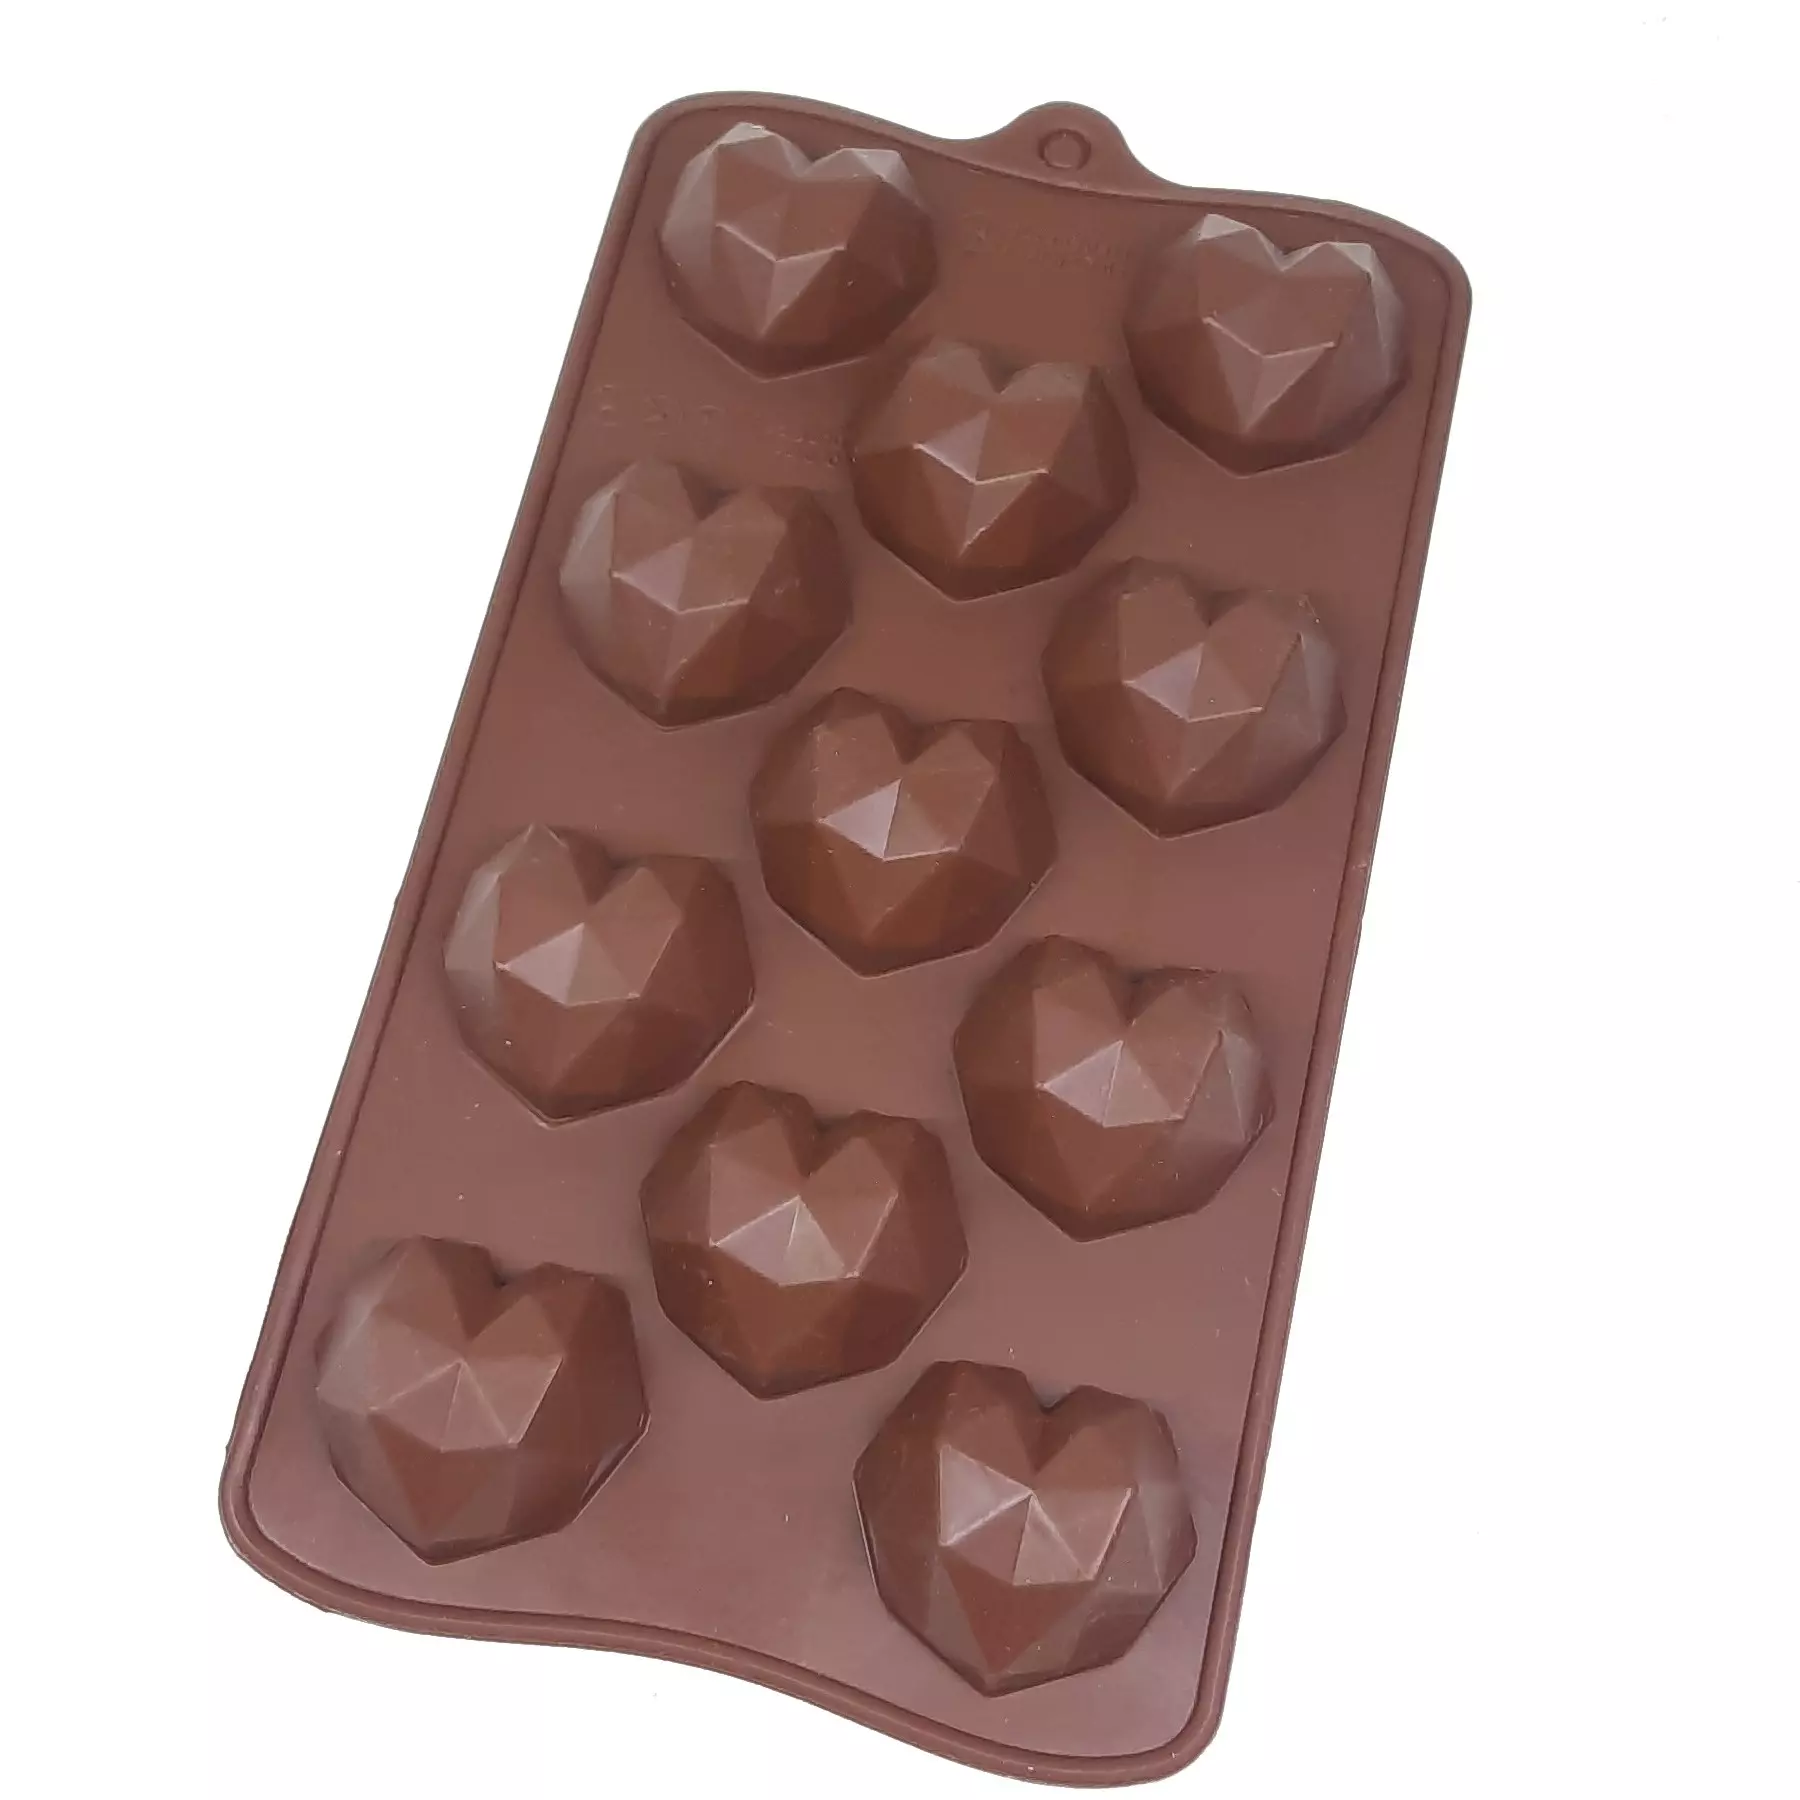 قالب شکلات جنس سلیکونی طرح قلب سورپرایز